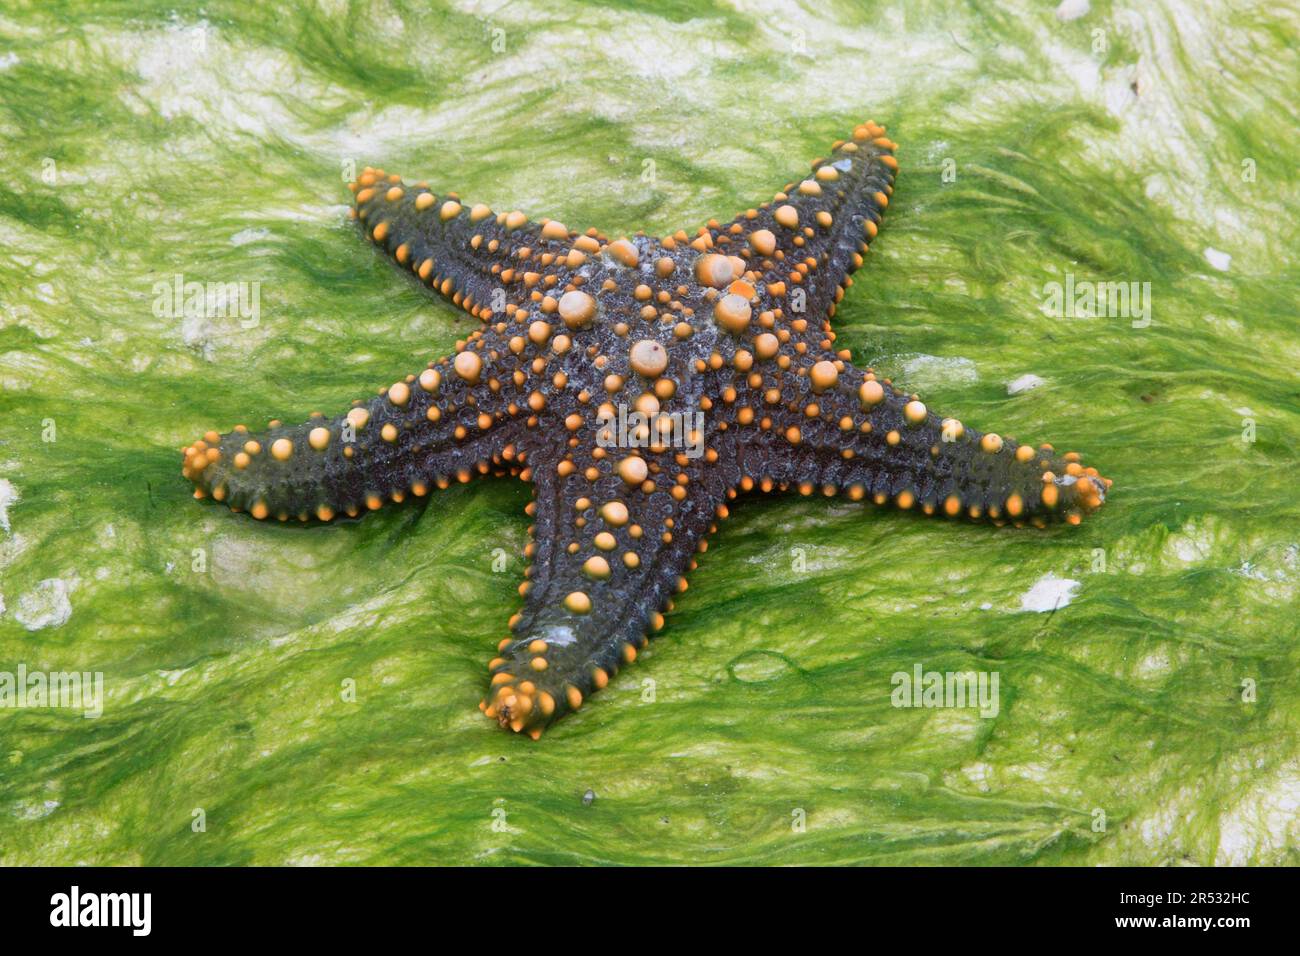 Starfish, Zanzibar (Pentaceraster cumingi), knobbed starfish, detachable, Tanzania Stock Photo